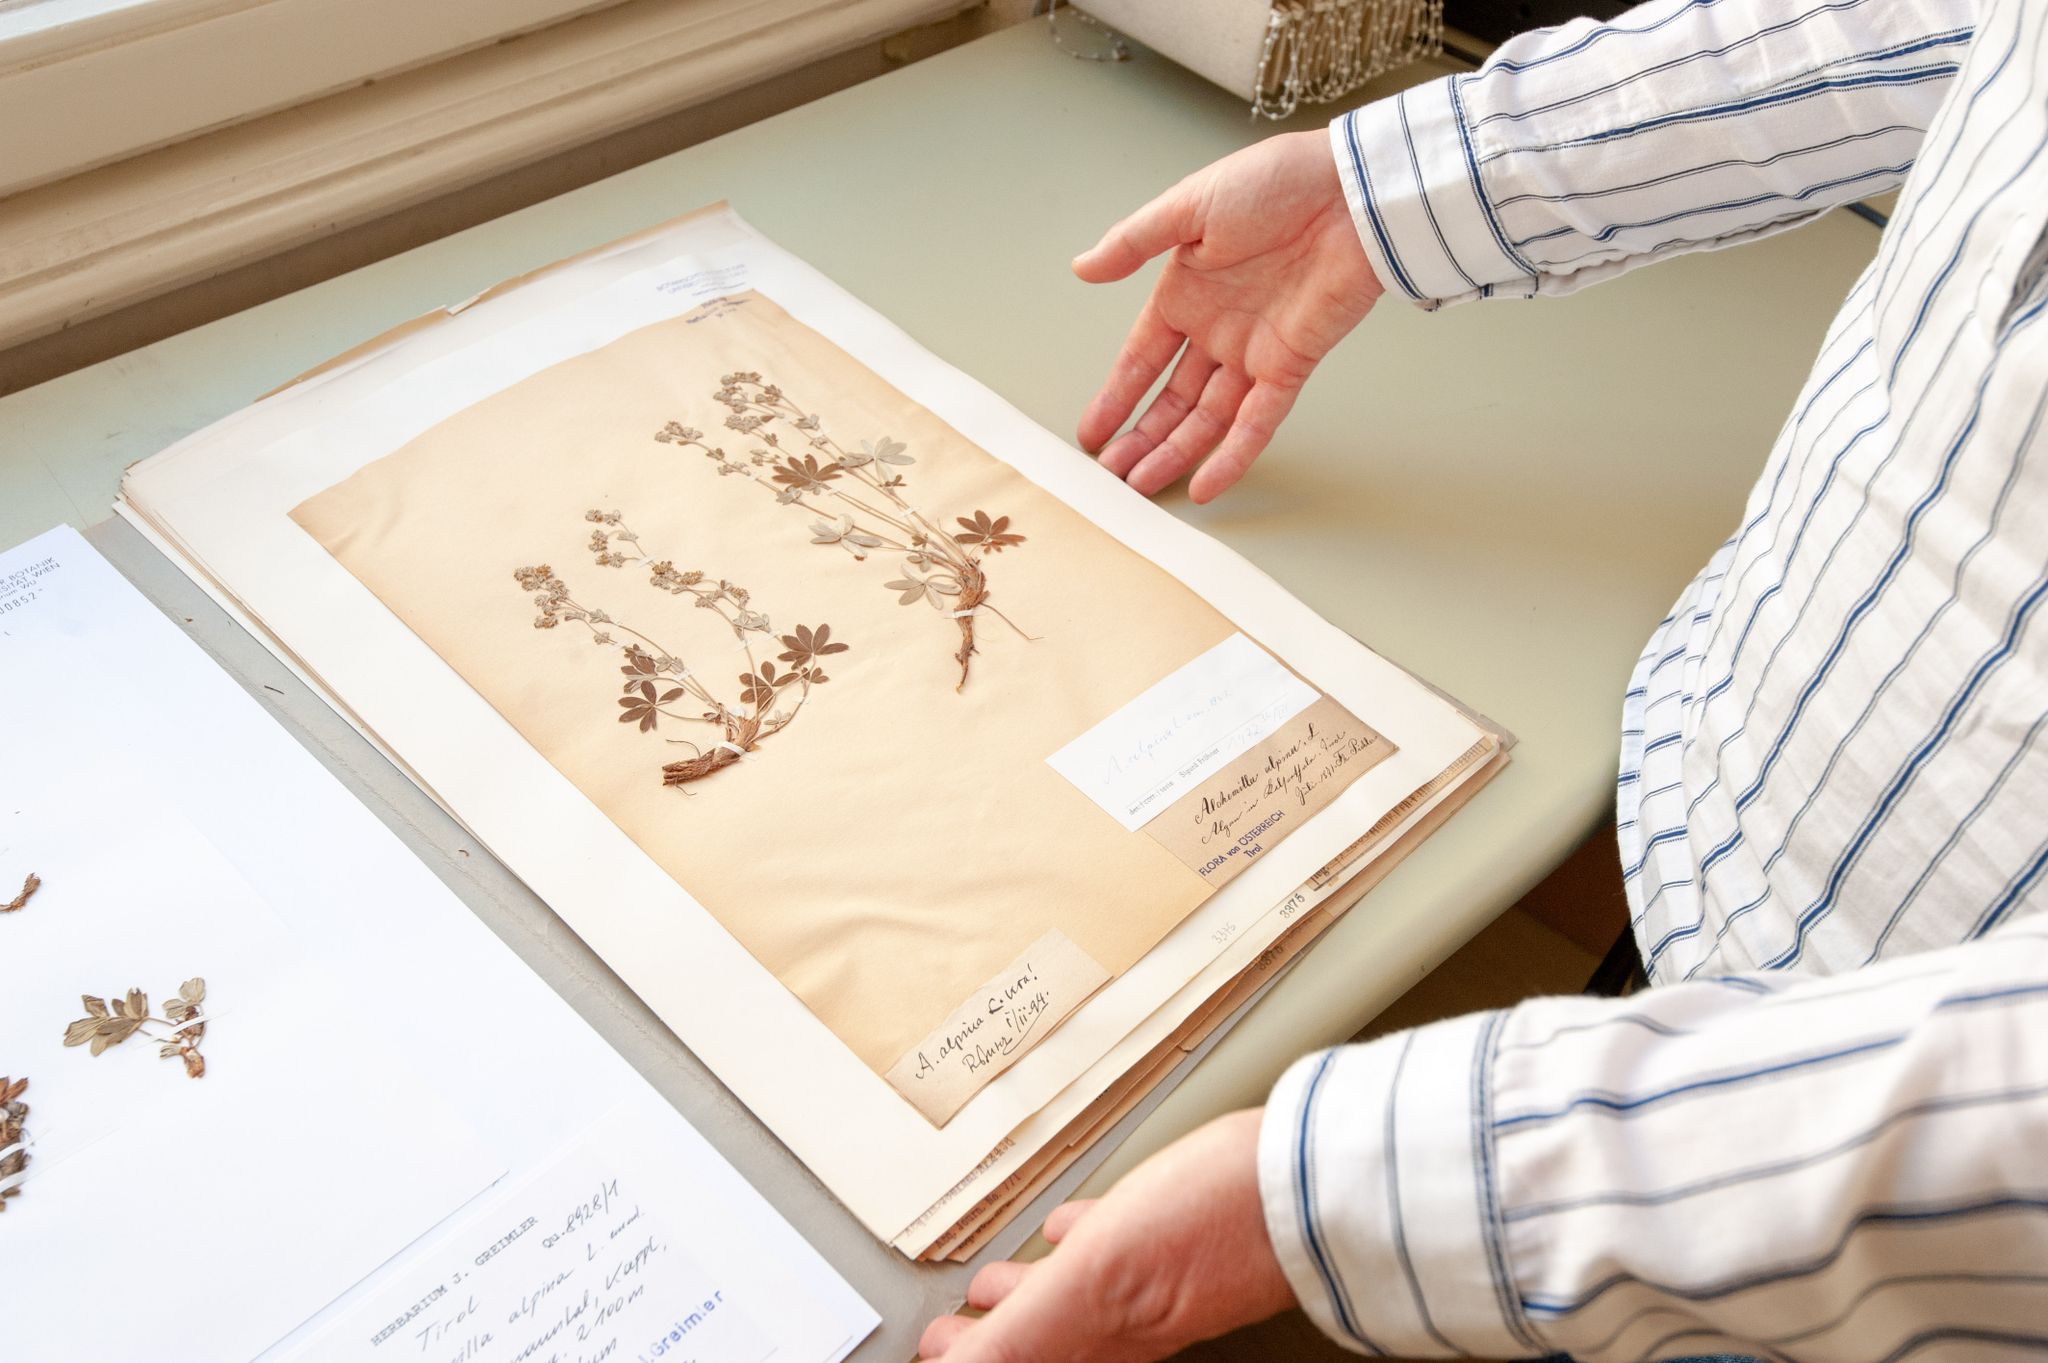 Wertvolles Erbe: Konservierte Pflanzen können dank einem Online-Herbarium nun auch im Internet zur Schau gestellt werden.